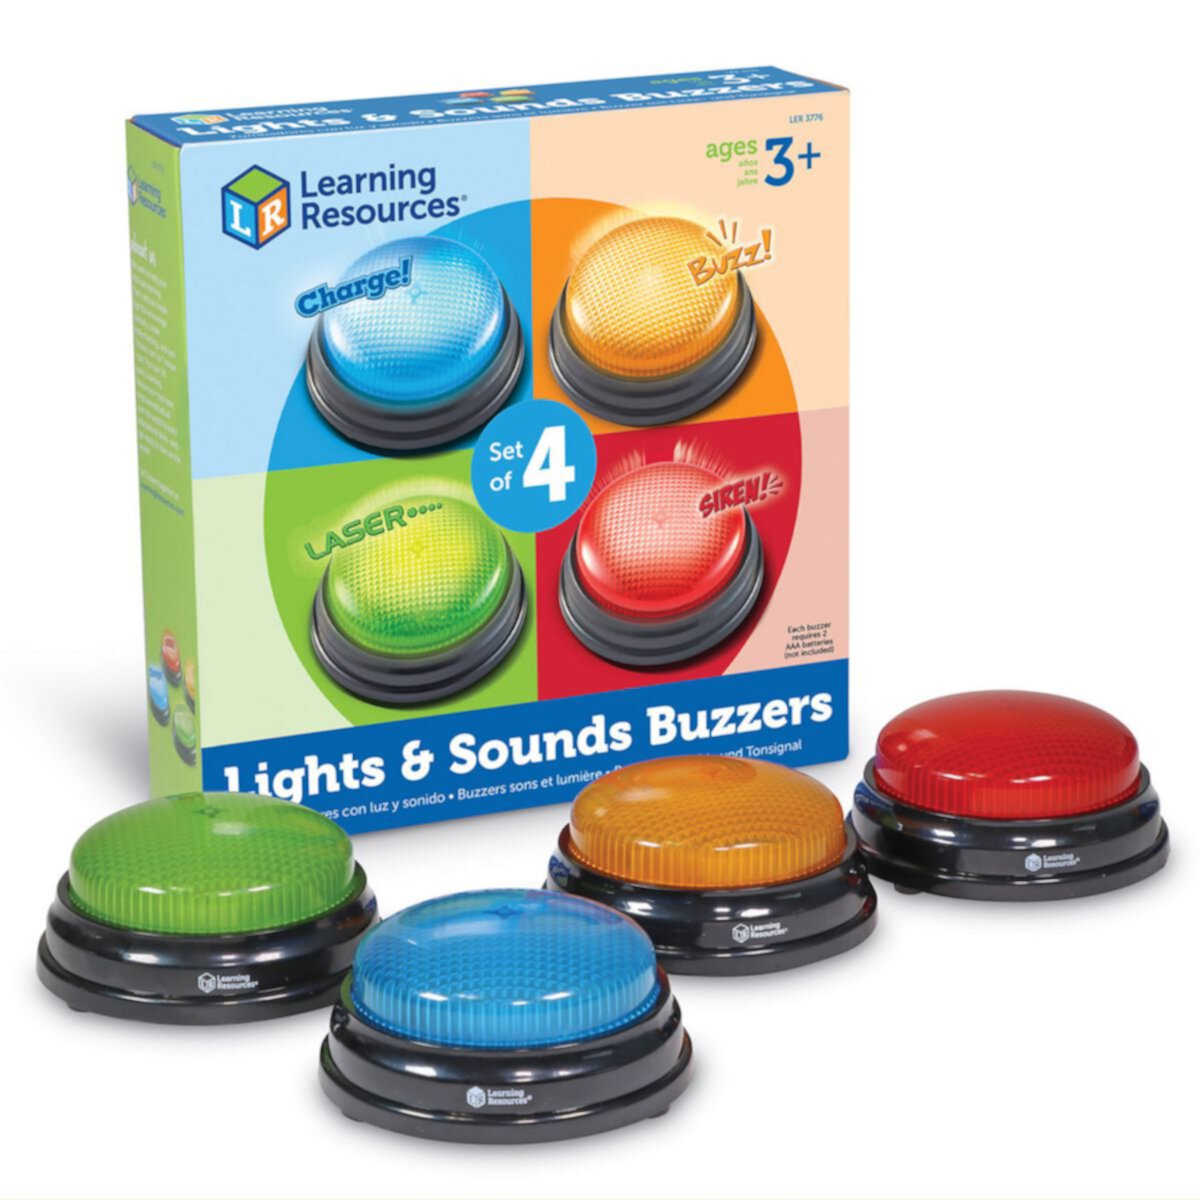 Учебные ресурсы Световые и звуковые сигналы ответа, набор из 4 шт. Learning Resources